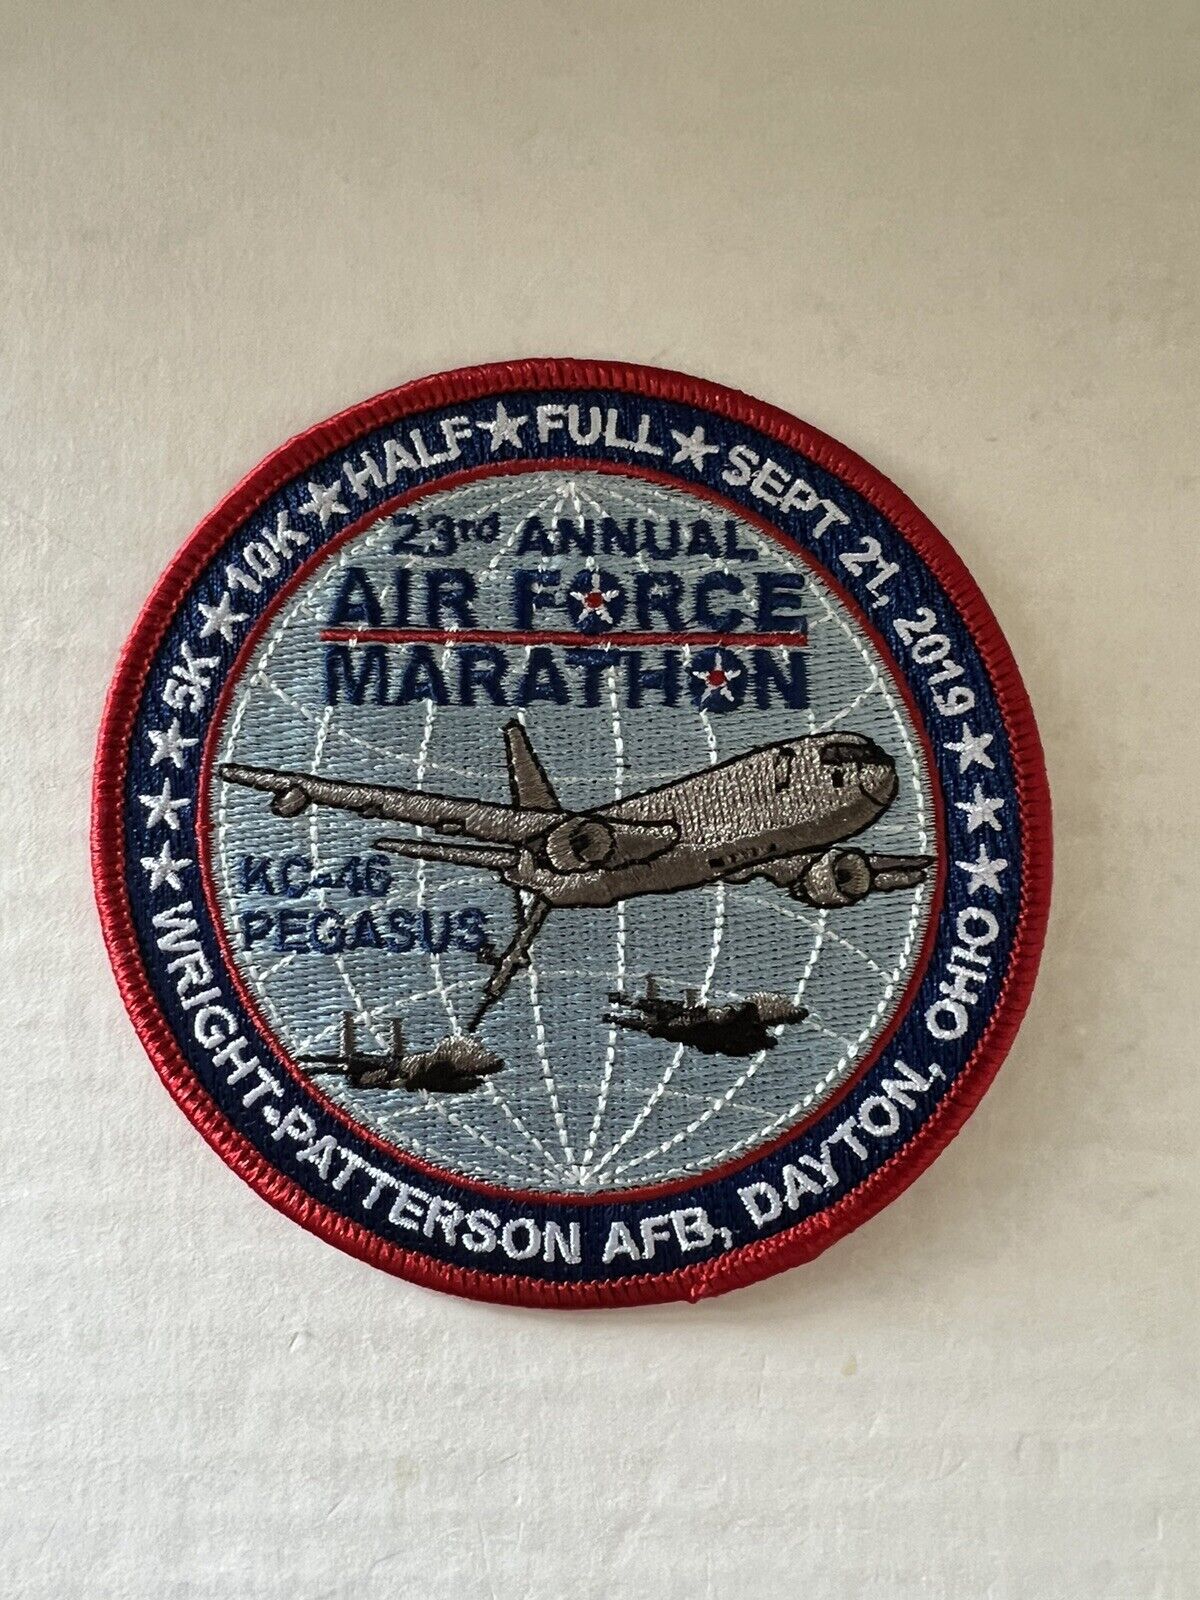 2019 Air Force Marathon Patch